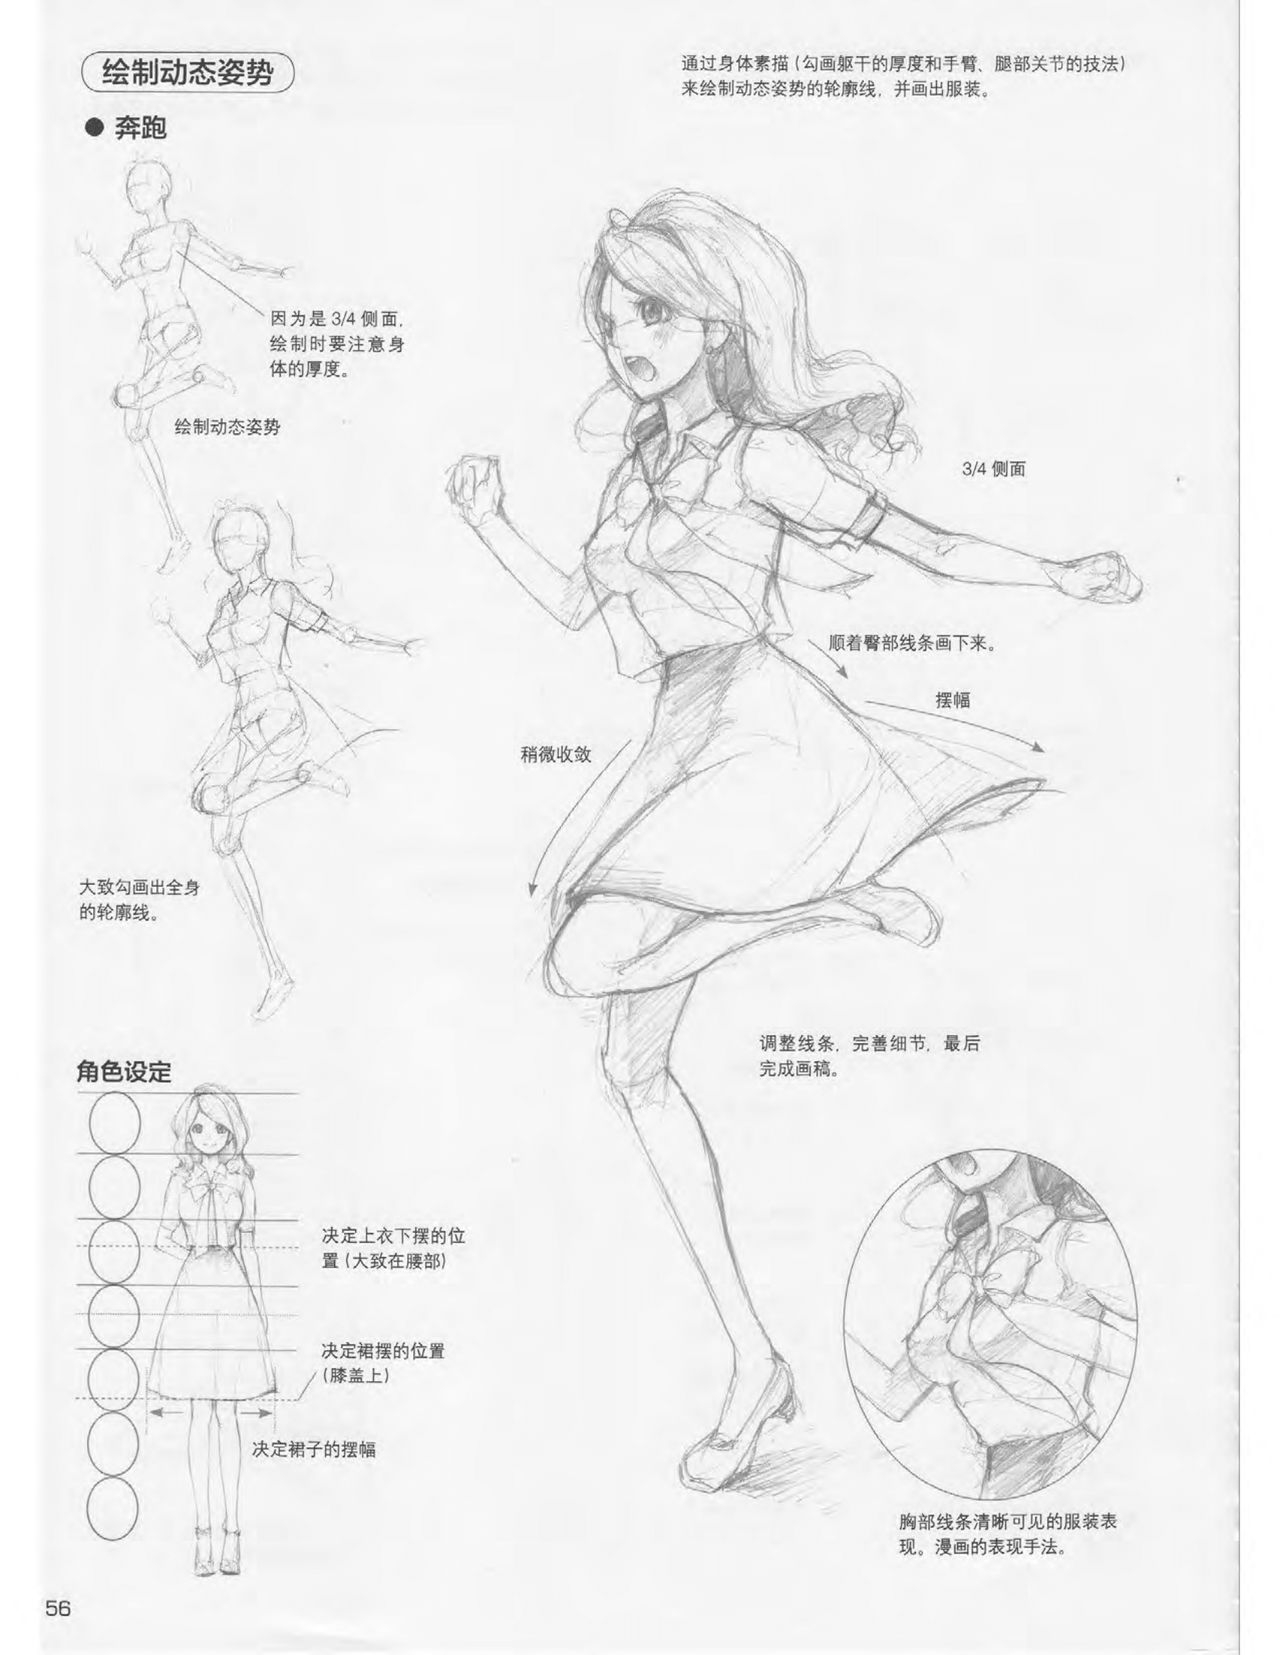 Japanese Manga Master Lecture 3: Lin Akira and Kakumaru Maru Talk About Glamorous Character Modeling 56